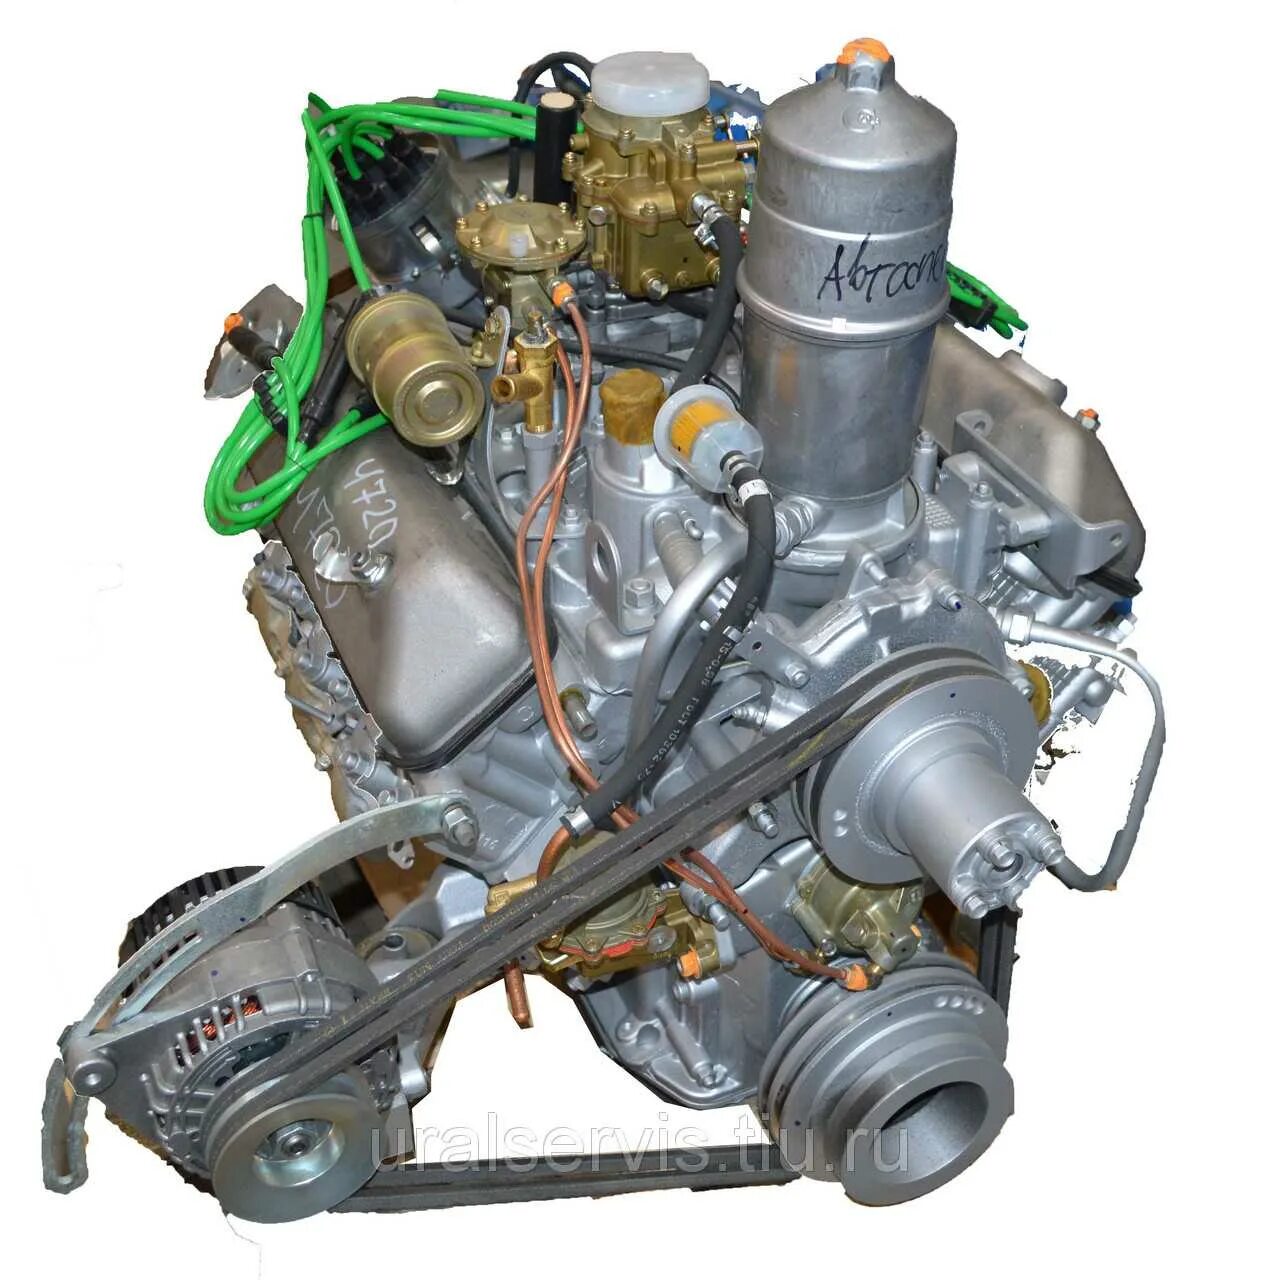 Двигатель газ паз. Двигатель ЗМЗ-511 (ГАЗ-53). Двигатель ЗМЗ 5231. Двигатель ЗМЗ 5231 10. Двигатель ЗМЗ ГАЗ 66.